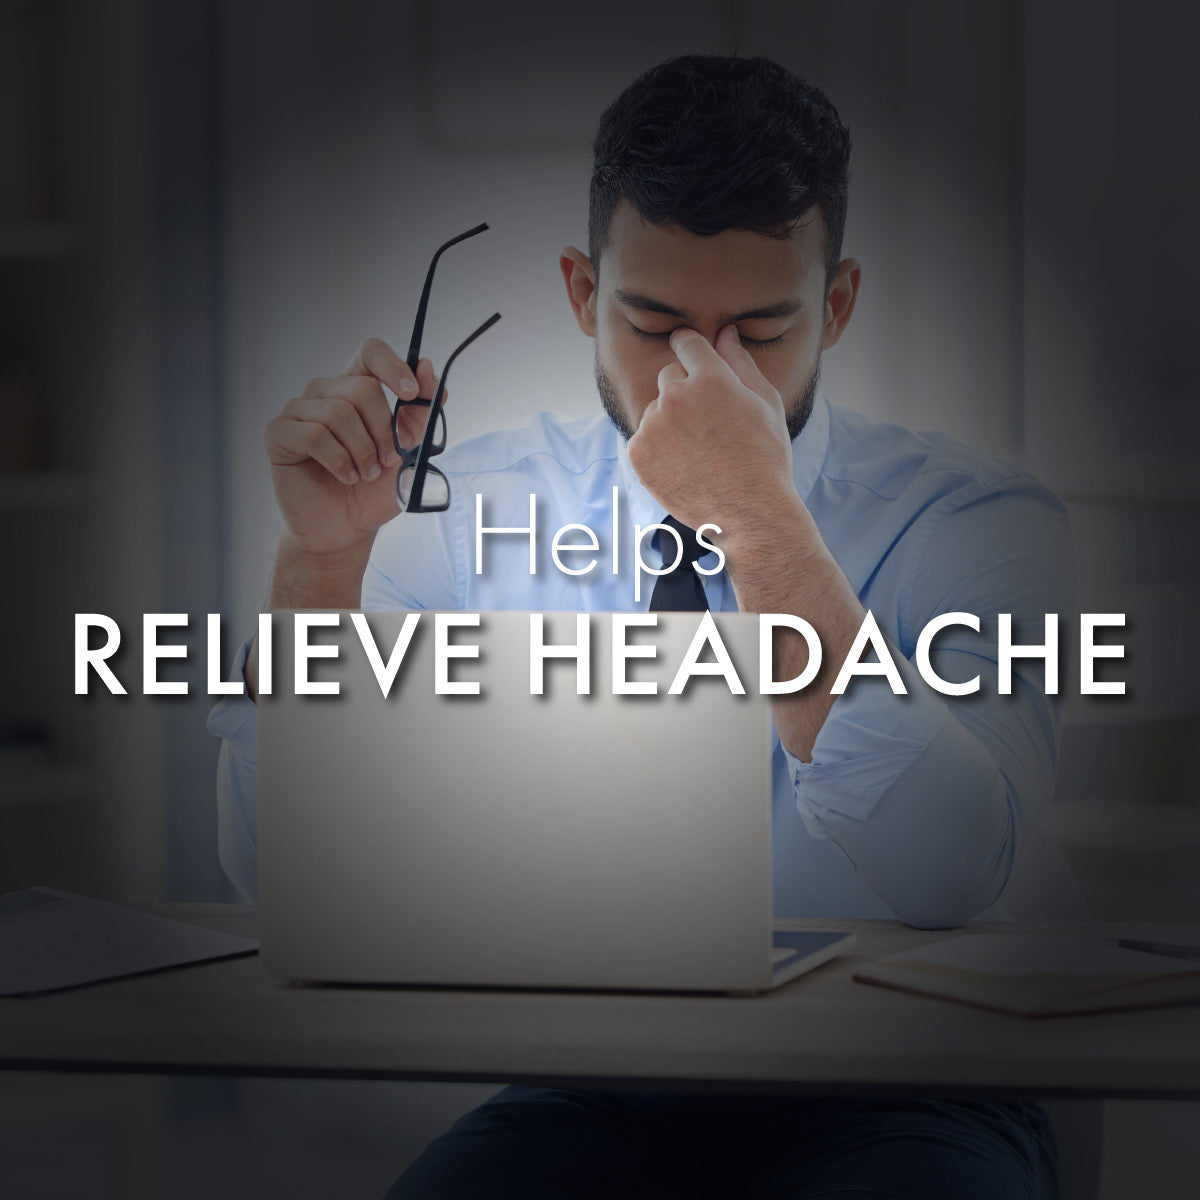 इन्हेलेंट: बंद नाक खोलने, सिरदर्द से राहत पाने और सांस लेना आसान बनाने  के लिए